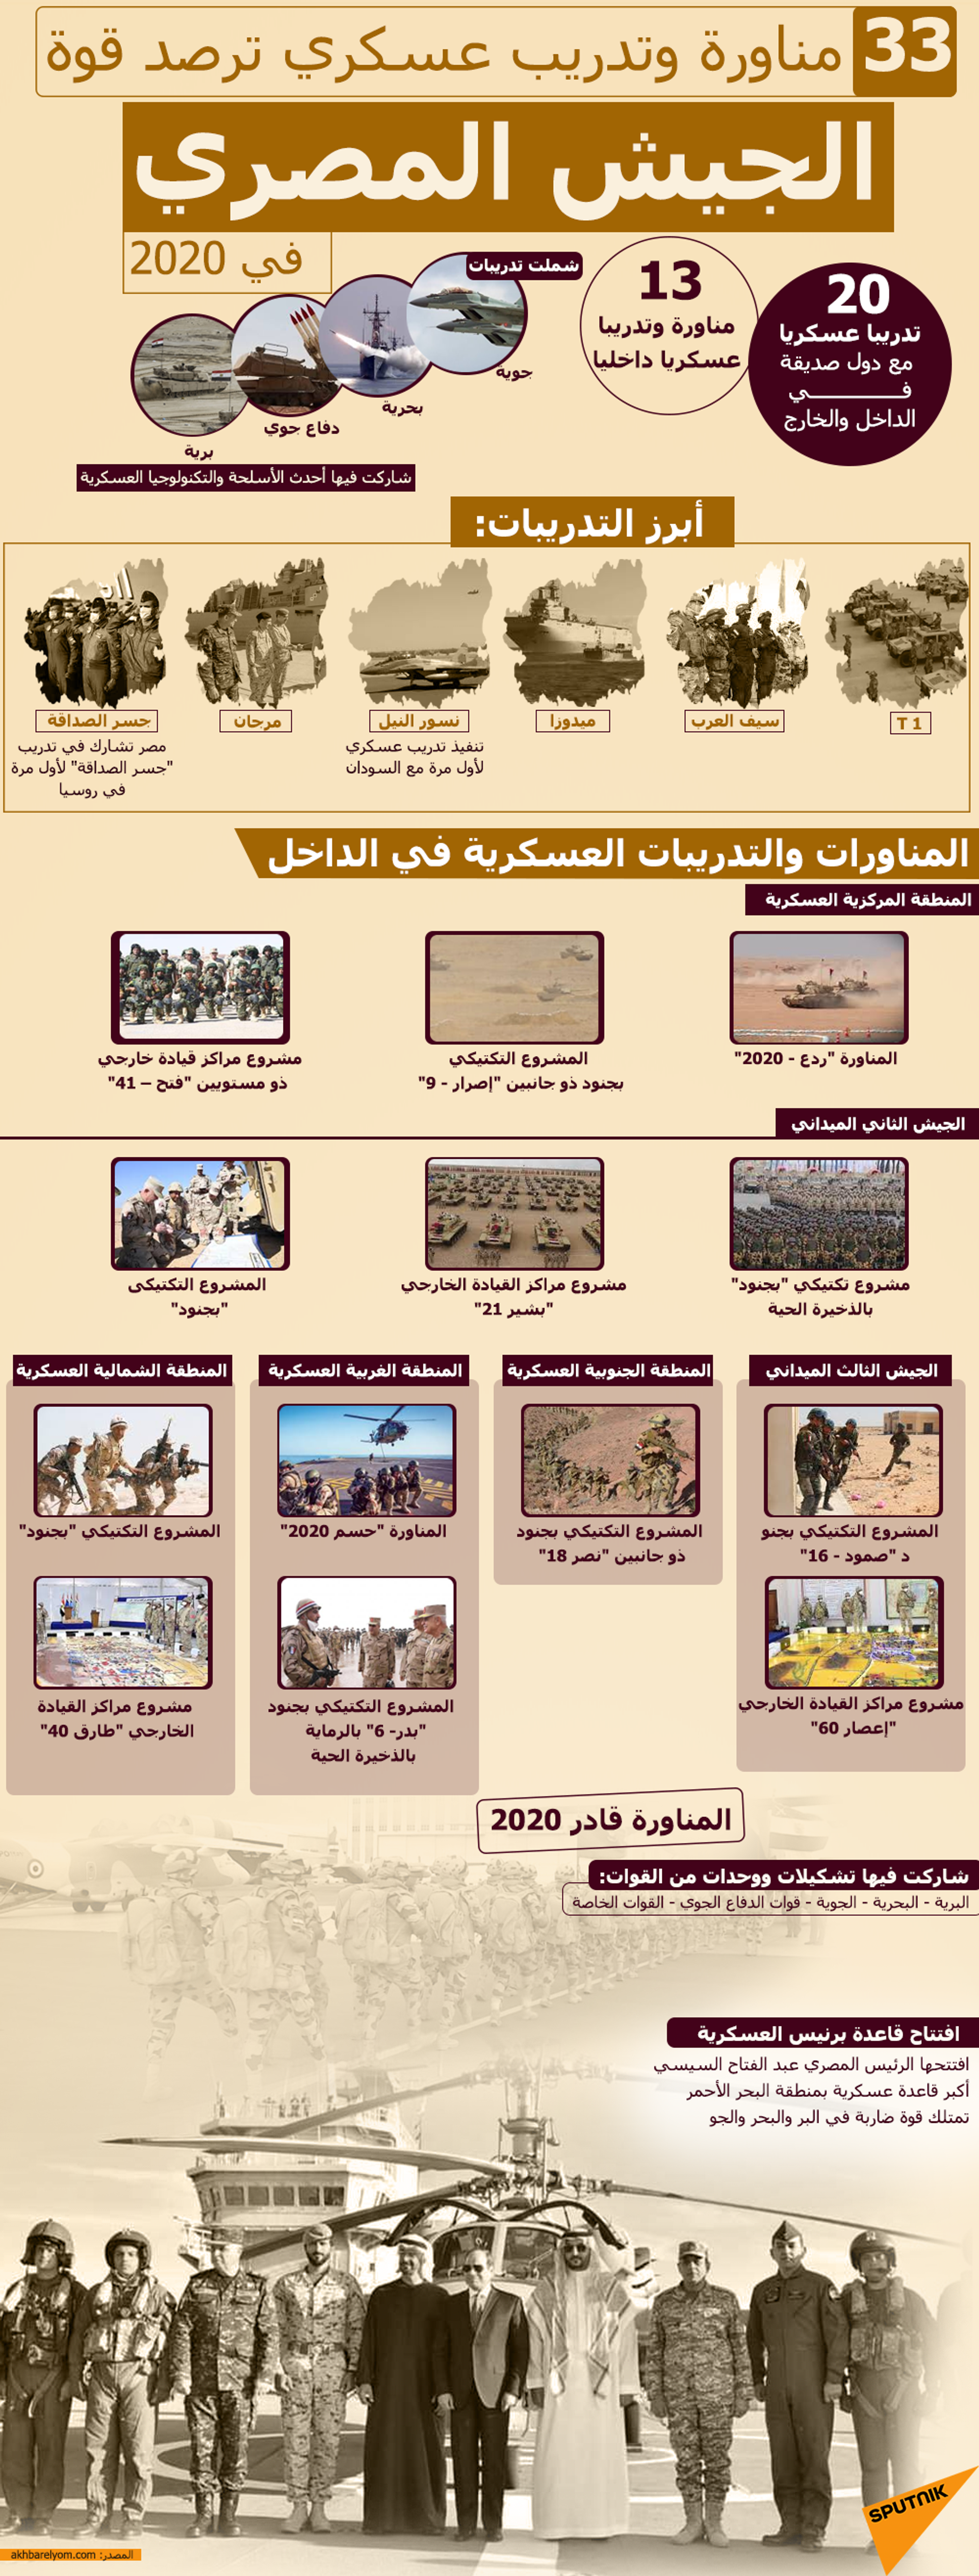 33 مناورة وتدريب عسكري ترصد قوة الجيش المصري في 2020 - سبوتنيك عربي, 1920, 01.08.2022